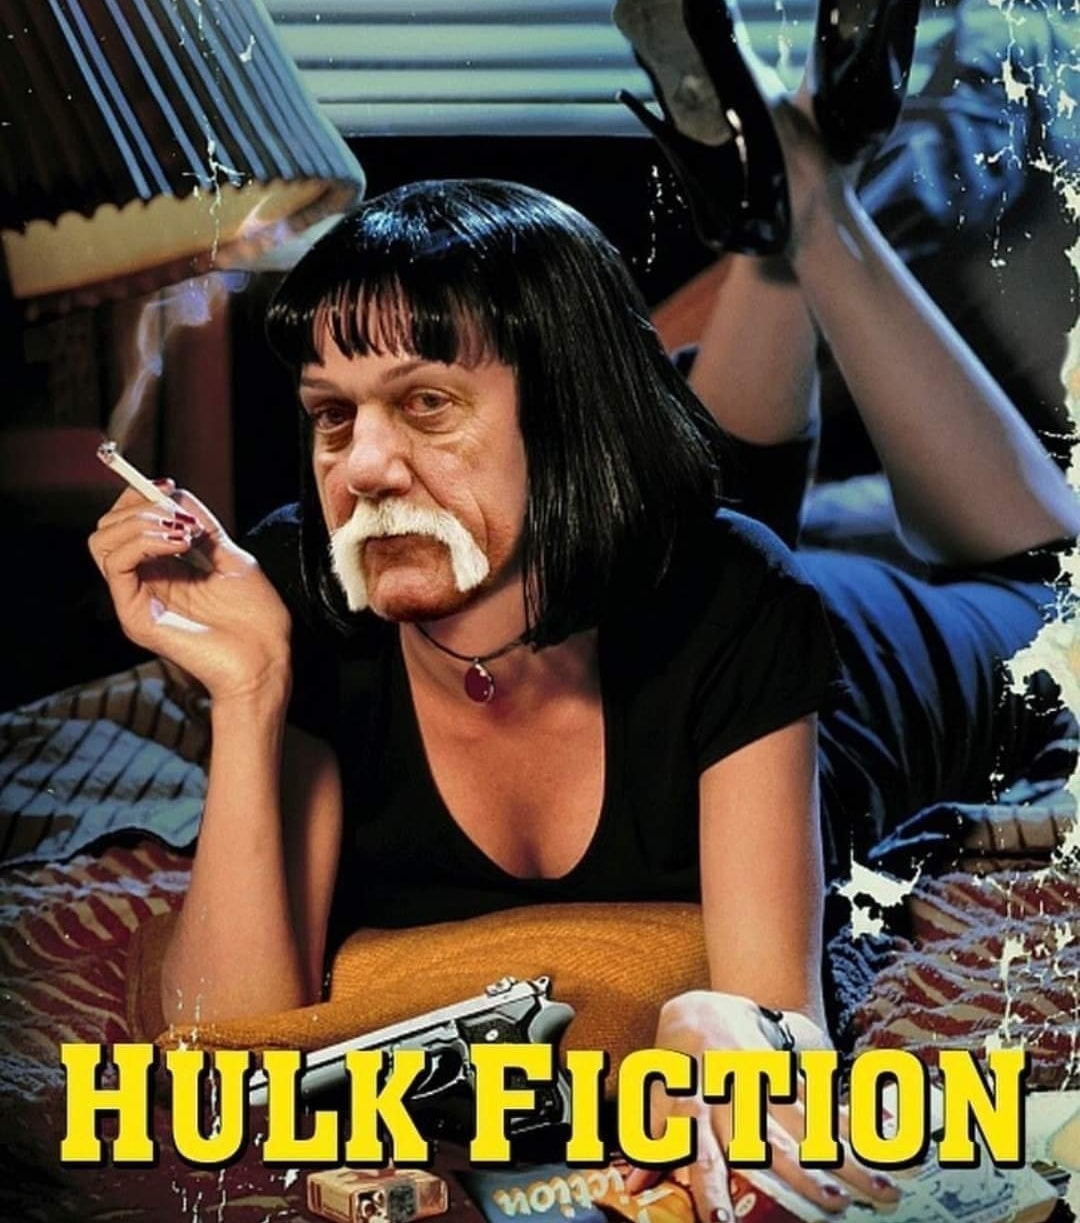 hulk fiction - Hulk Fiction E non